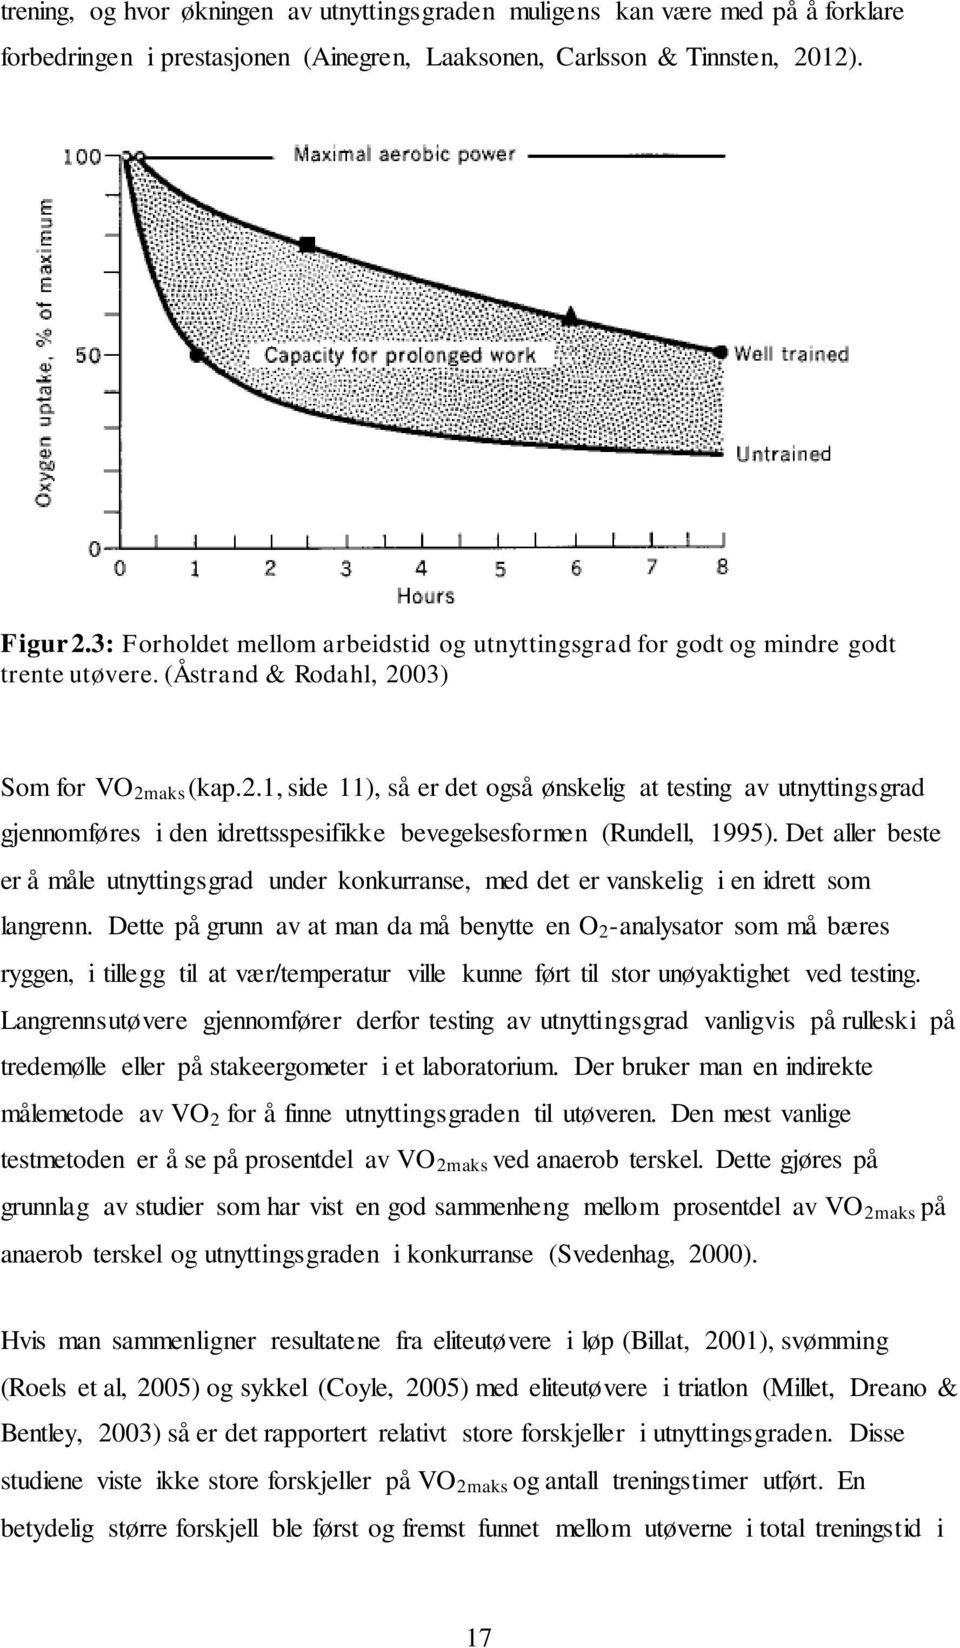 03) Som for VO 2maks (kap.2.1, side 11), så er det også ønskelig at testing av utnyttingsgrad gjennomføres i den idrettsspesifikke bevegelsesformen (Rundell, 1995).